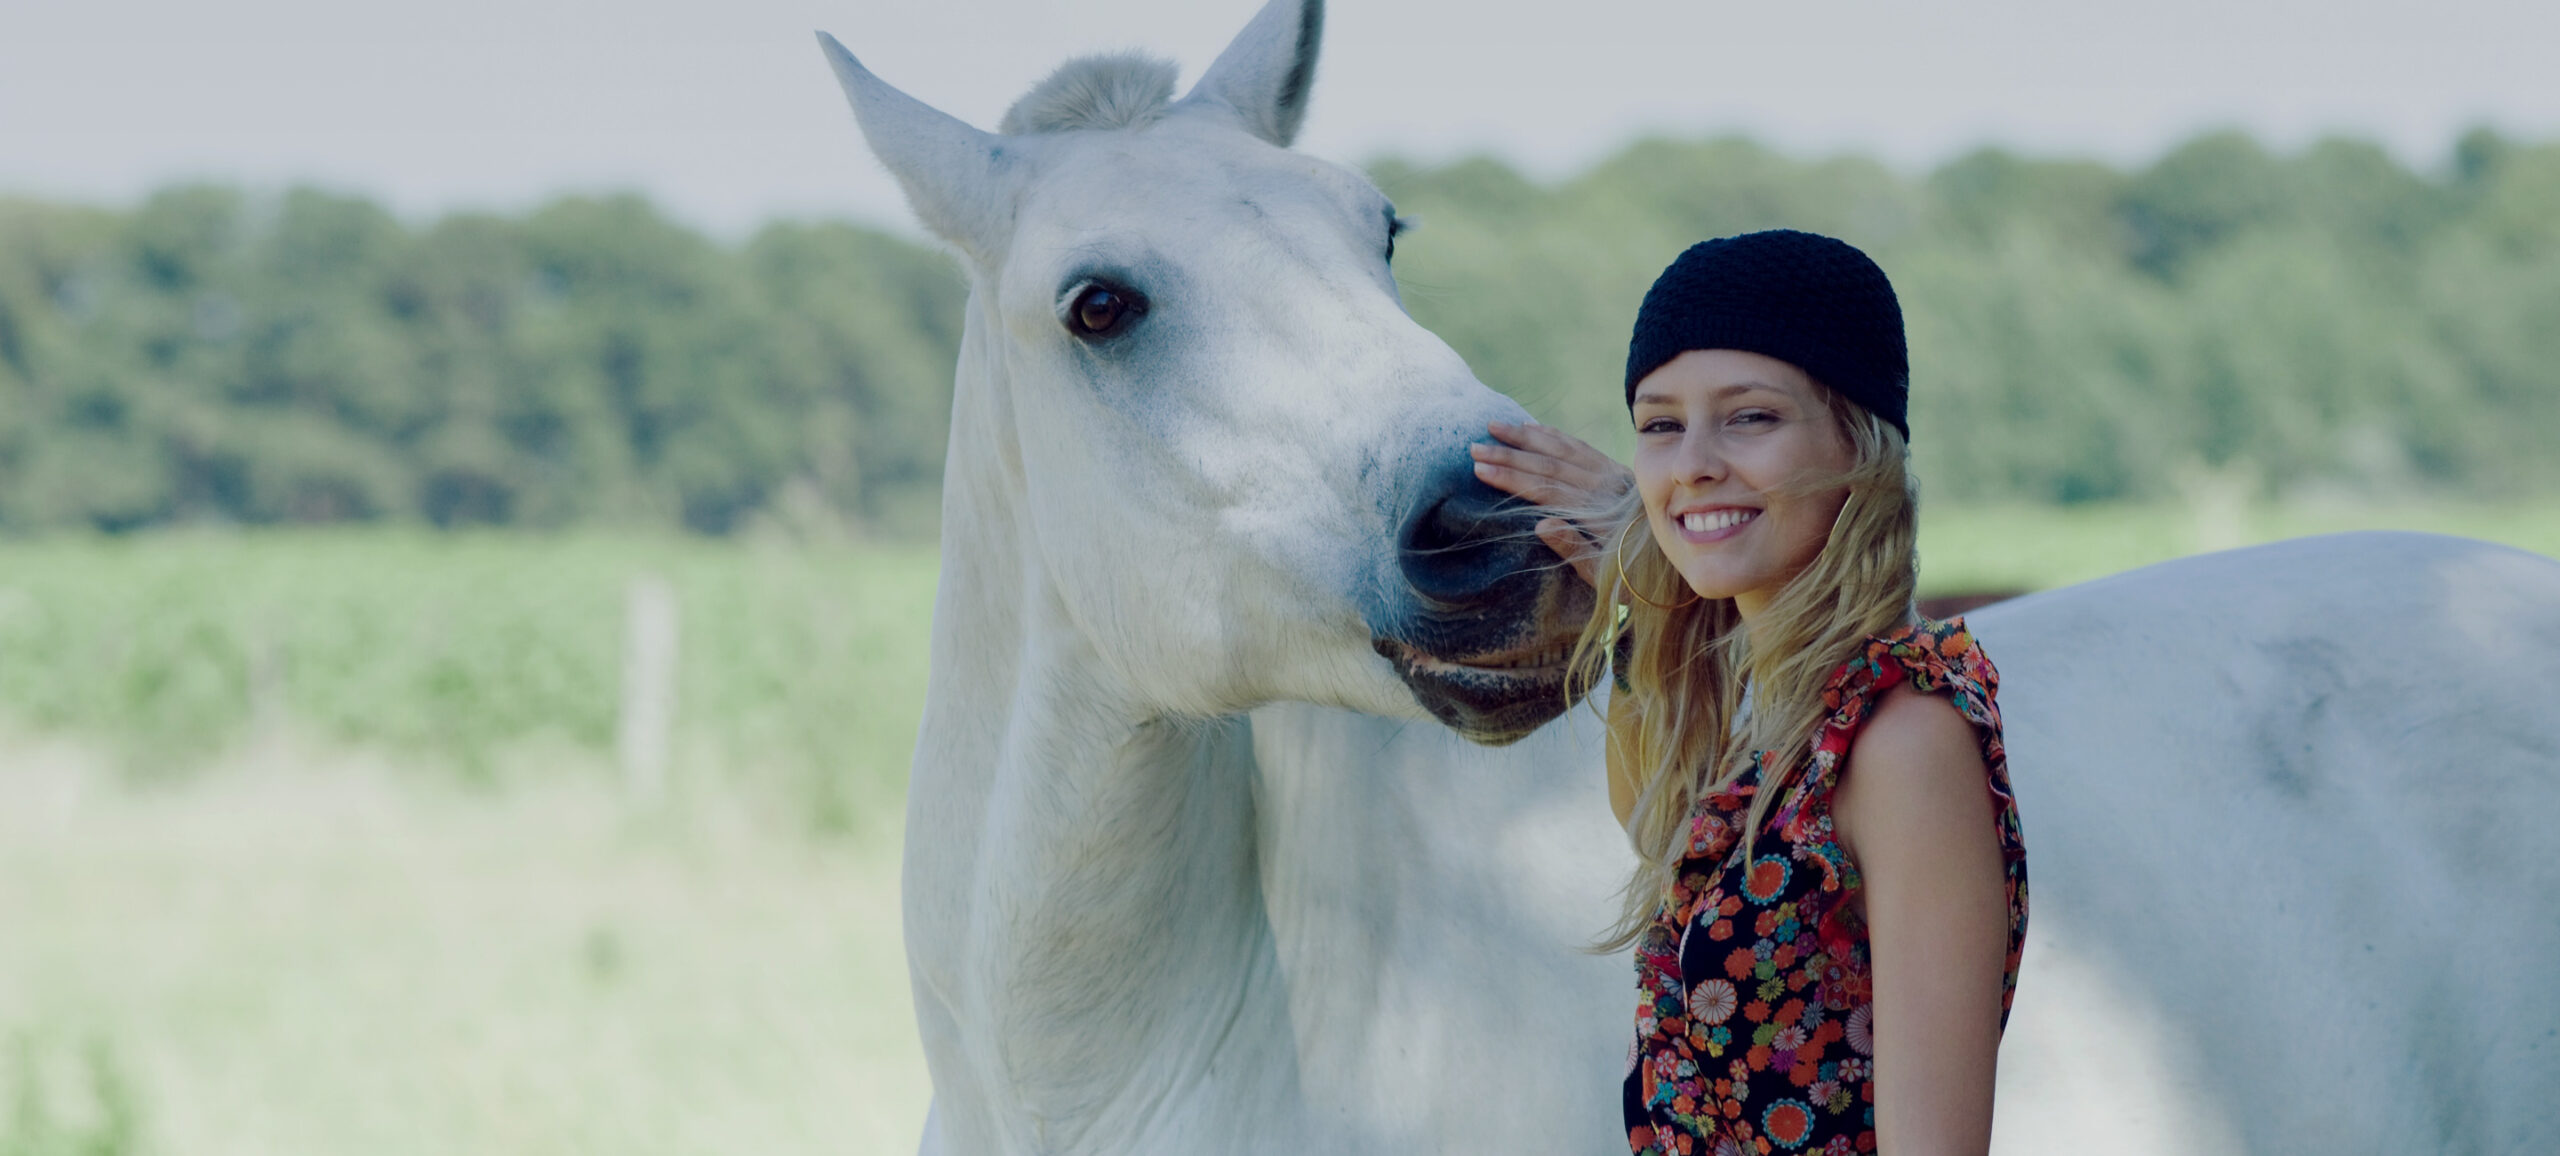 Mädchen mit Mütze legt Hand auf Nase eines Pferdes